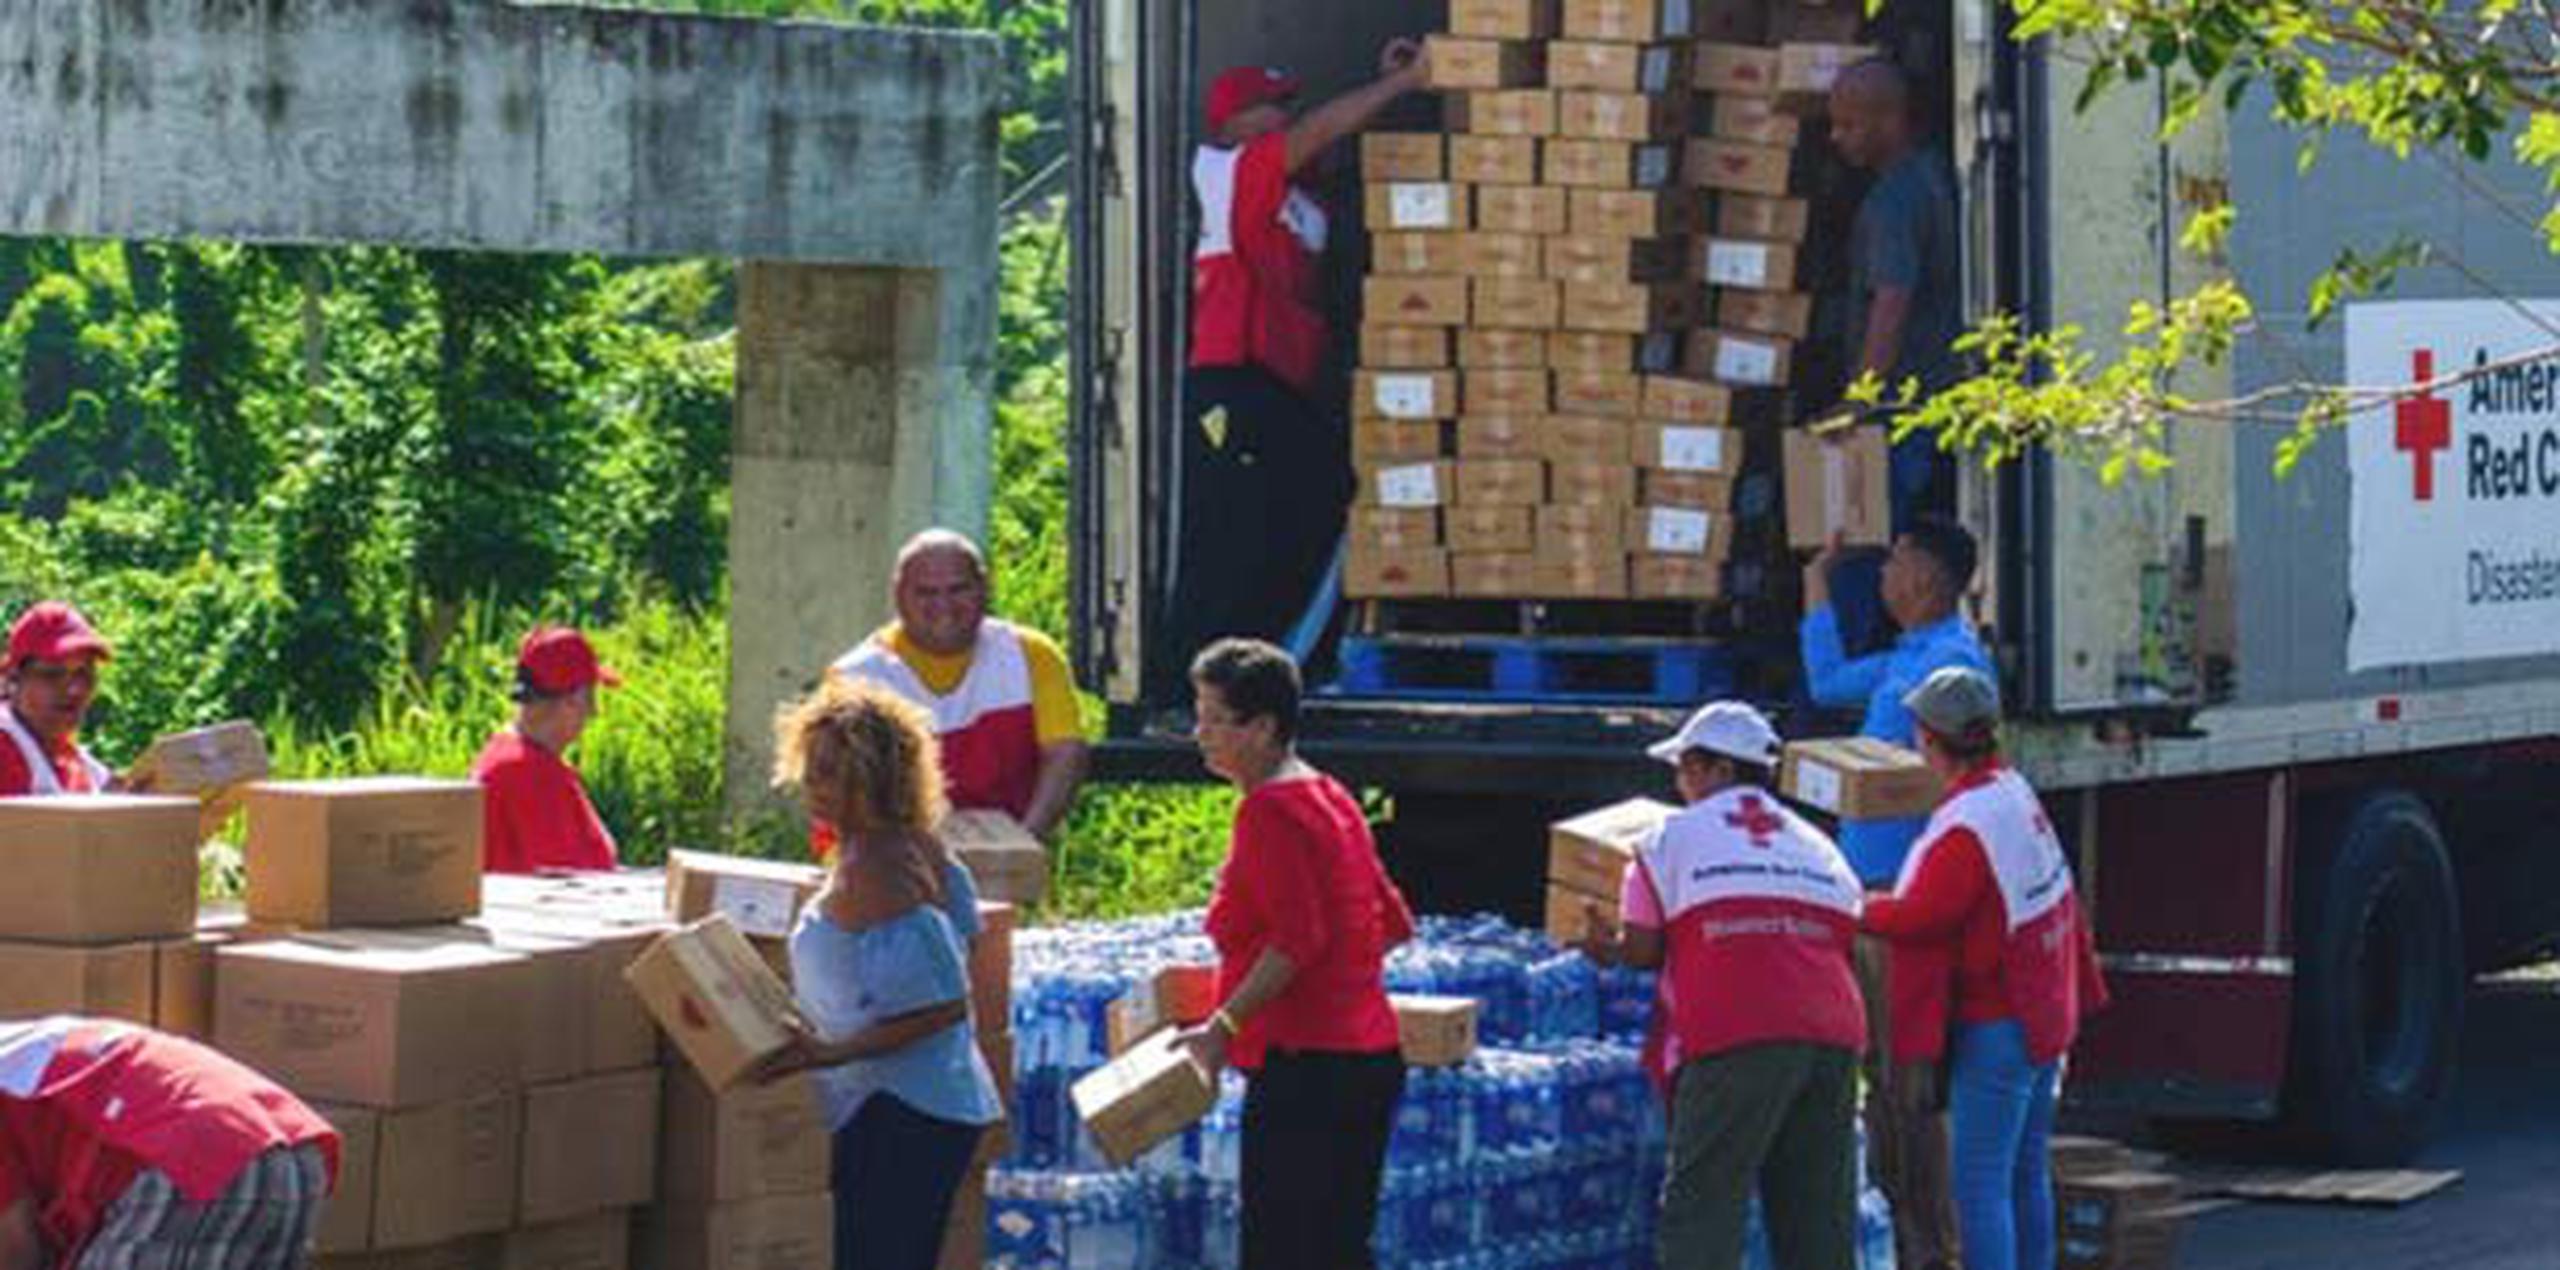 Entre los servicios brindados por la Cruz Roja a raíz de la emergencia están: 12.6 millones de alimentos y meriendas distribuidos. (Suministrada)